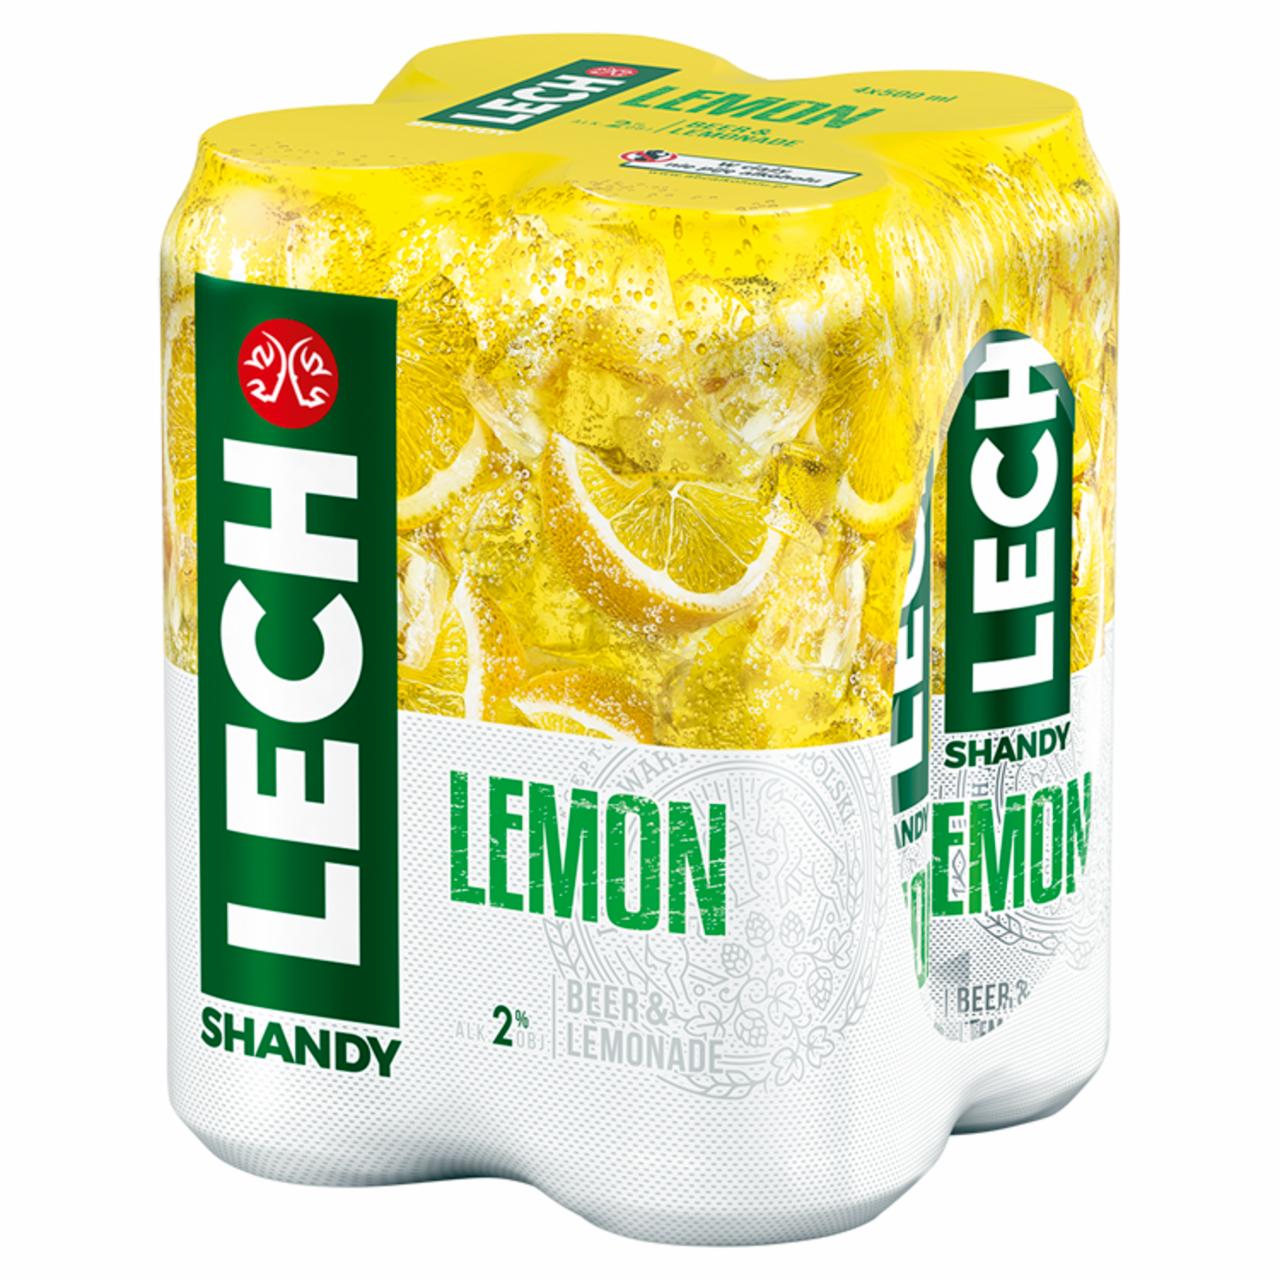 Zdjęcia - Lech Shandy Lemon Piwo z lemoniadą 4 x 500 ml